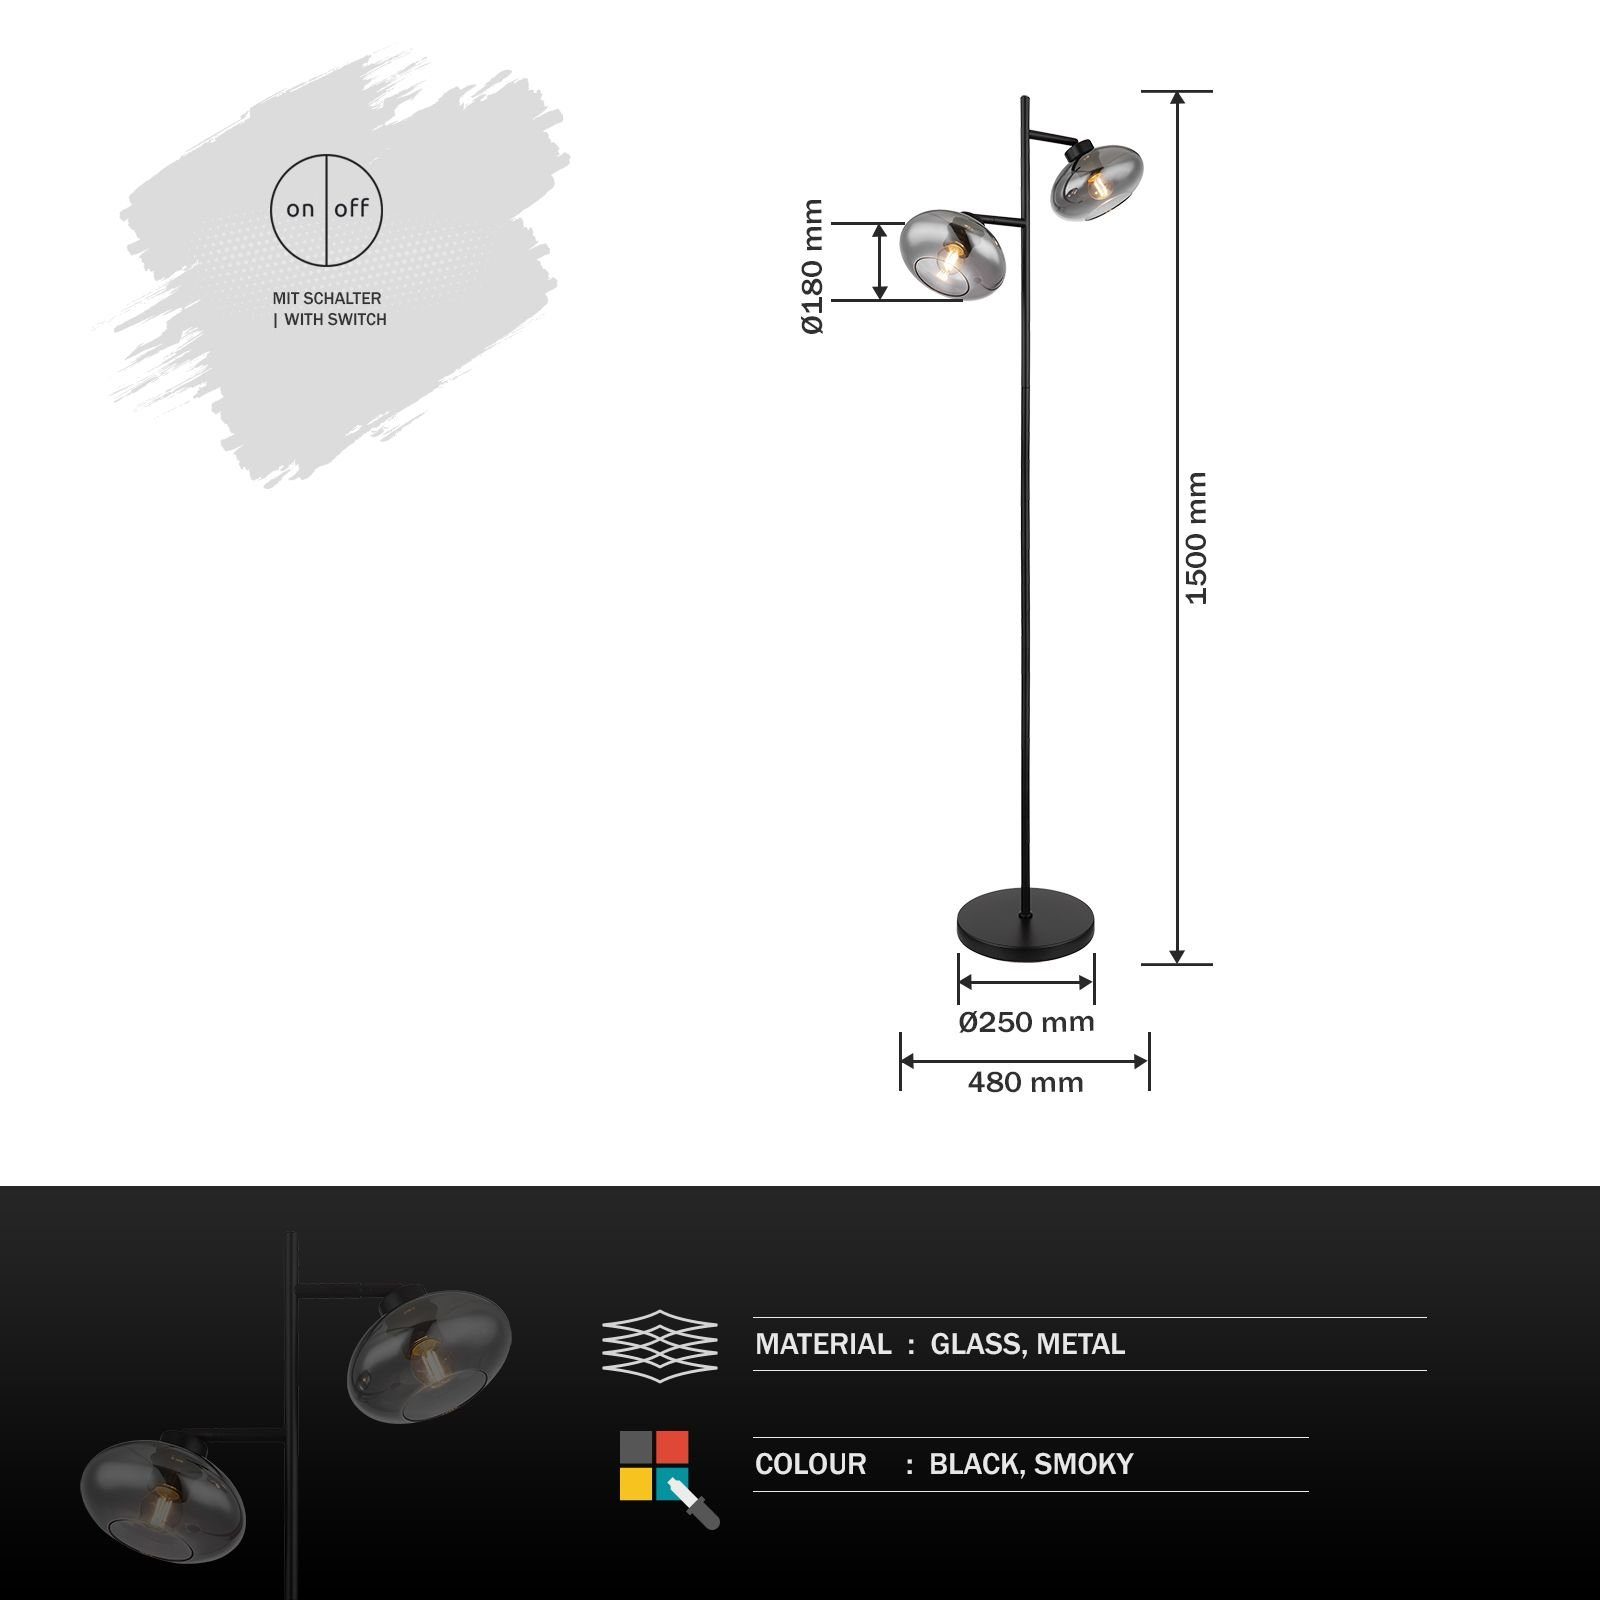 Stehlampe GLOBO Globo schwarz Stehlampe Schlafzimmer Schalter Wohnzimmer Stehleuchte